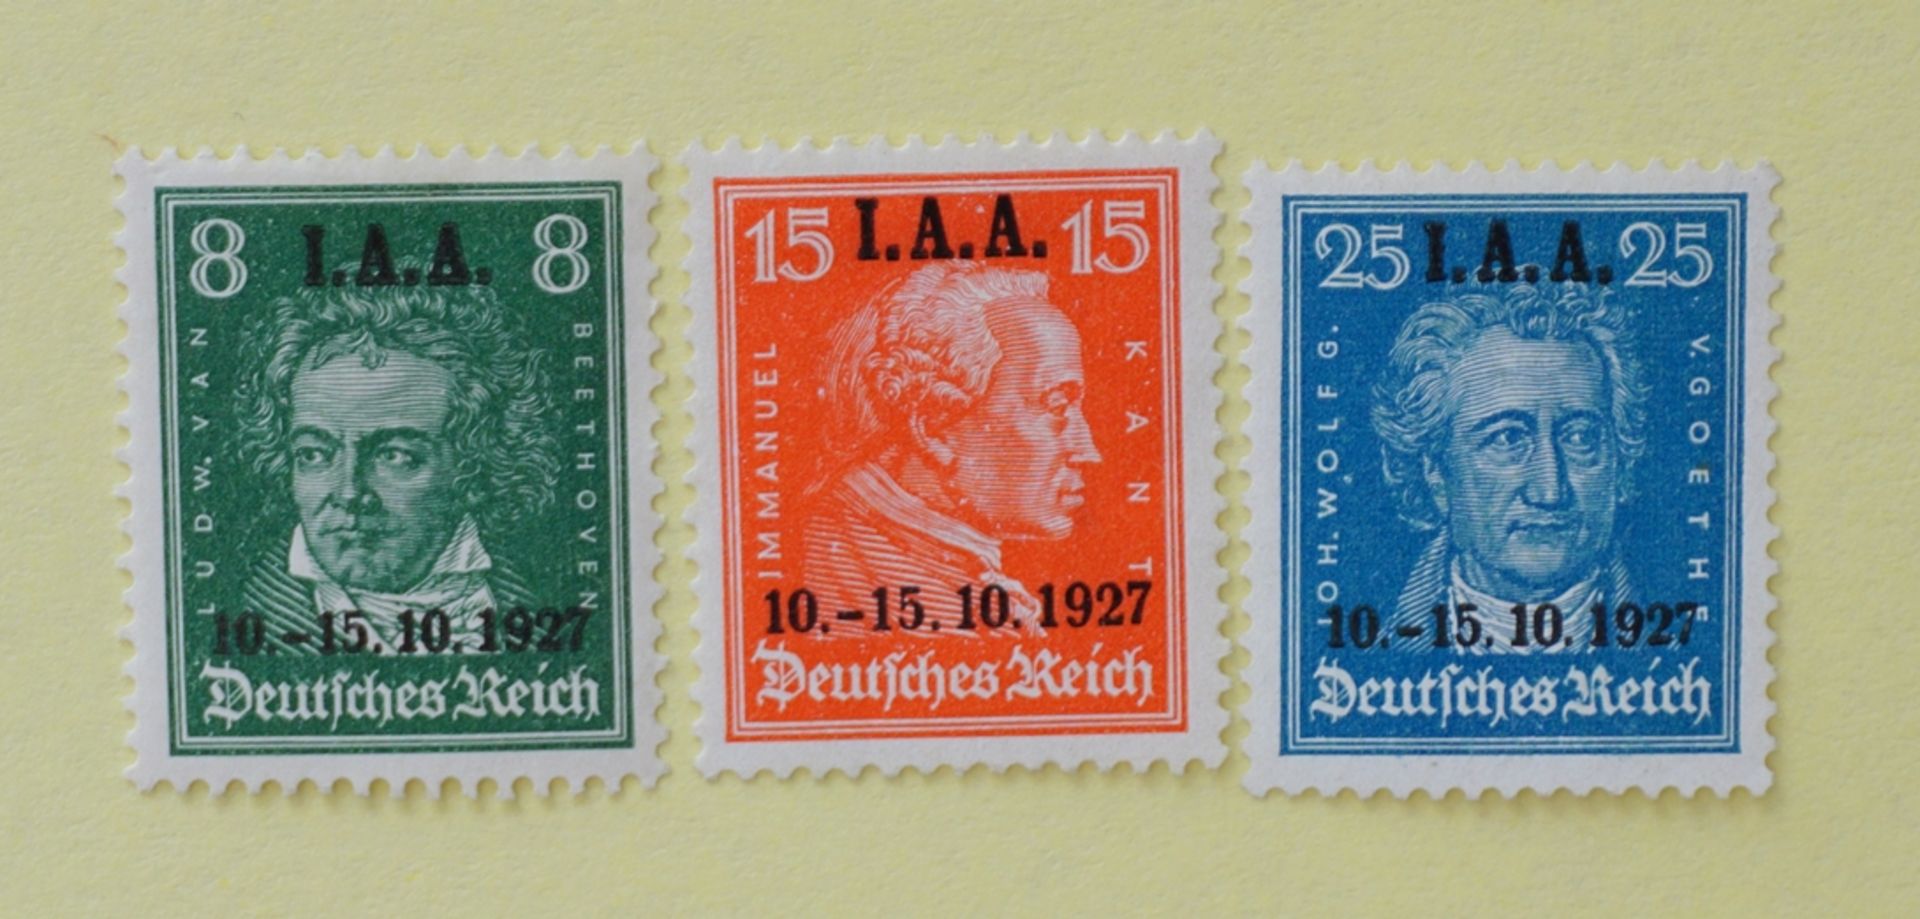 Dt.Reich: Tagung des internationalen Arbeitsamtes m. schw. bdr. Aufdruck "I.A.A. 10.-15.10.1927", u